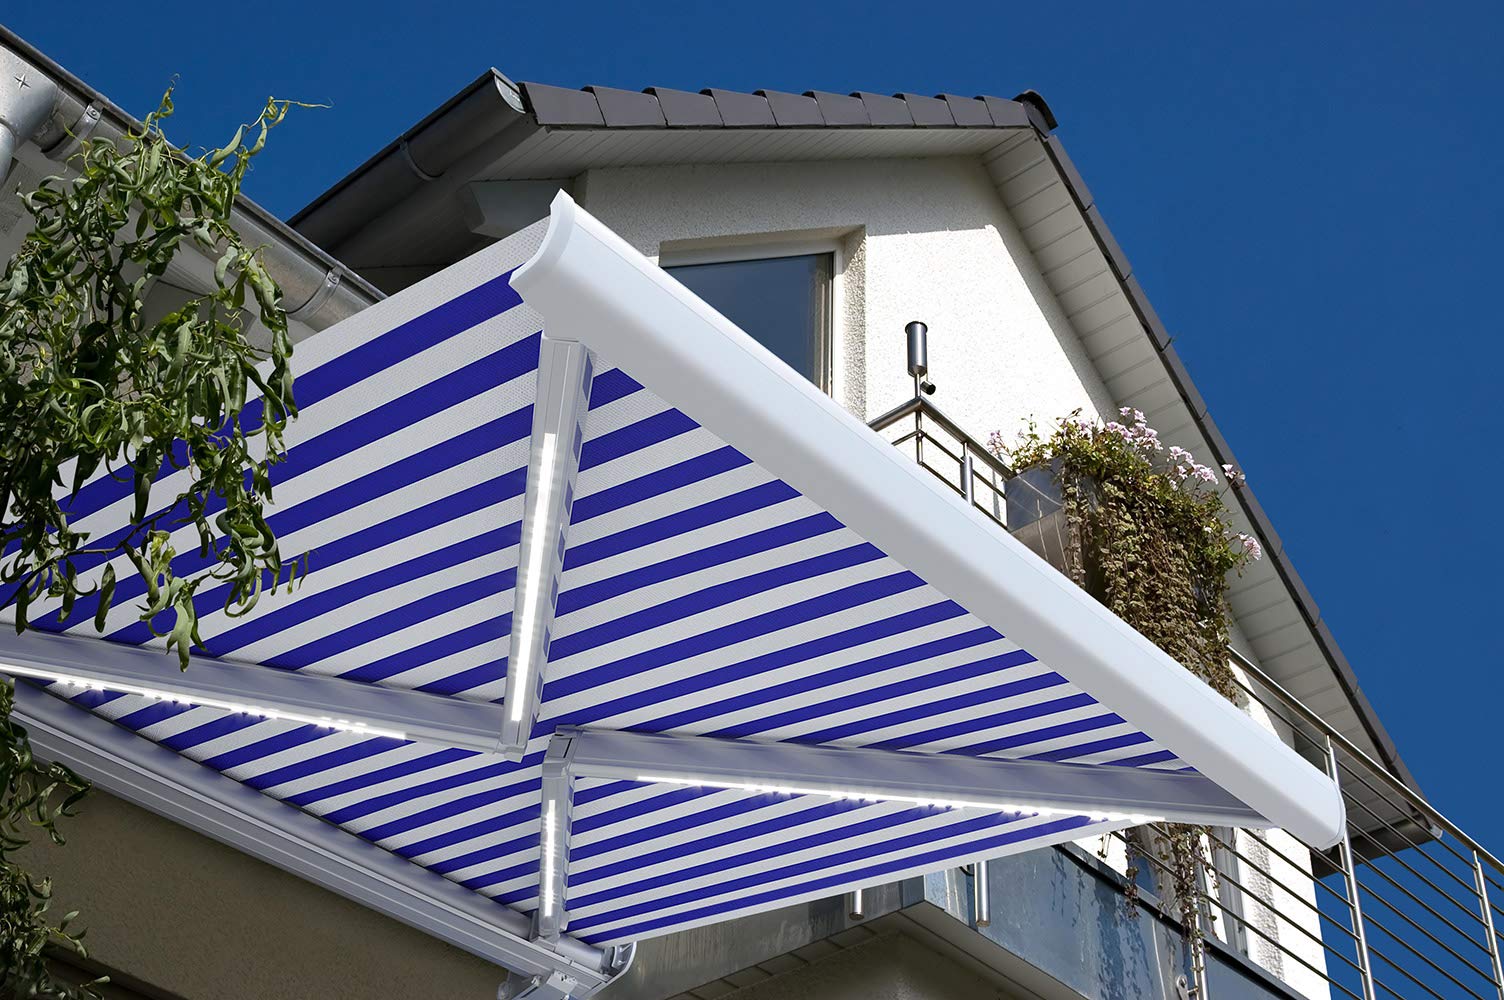 HOME DELUXE - LED Vollkassettenmarkise ELOS - Marineblau-Weiß, 585 x 300 cm - inkl. Wind- und Sonnensensor, Fernbedienung, Handkurbel, Montagematerial I Terrassenüberdachung Sonnenschutz Windschutz